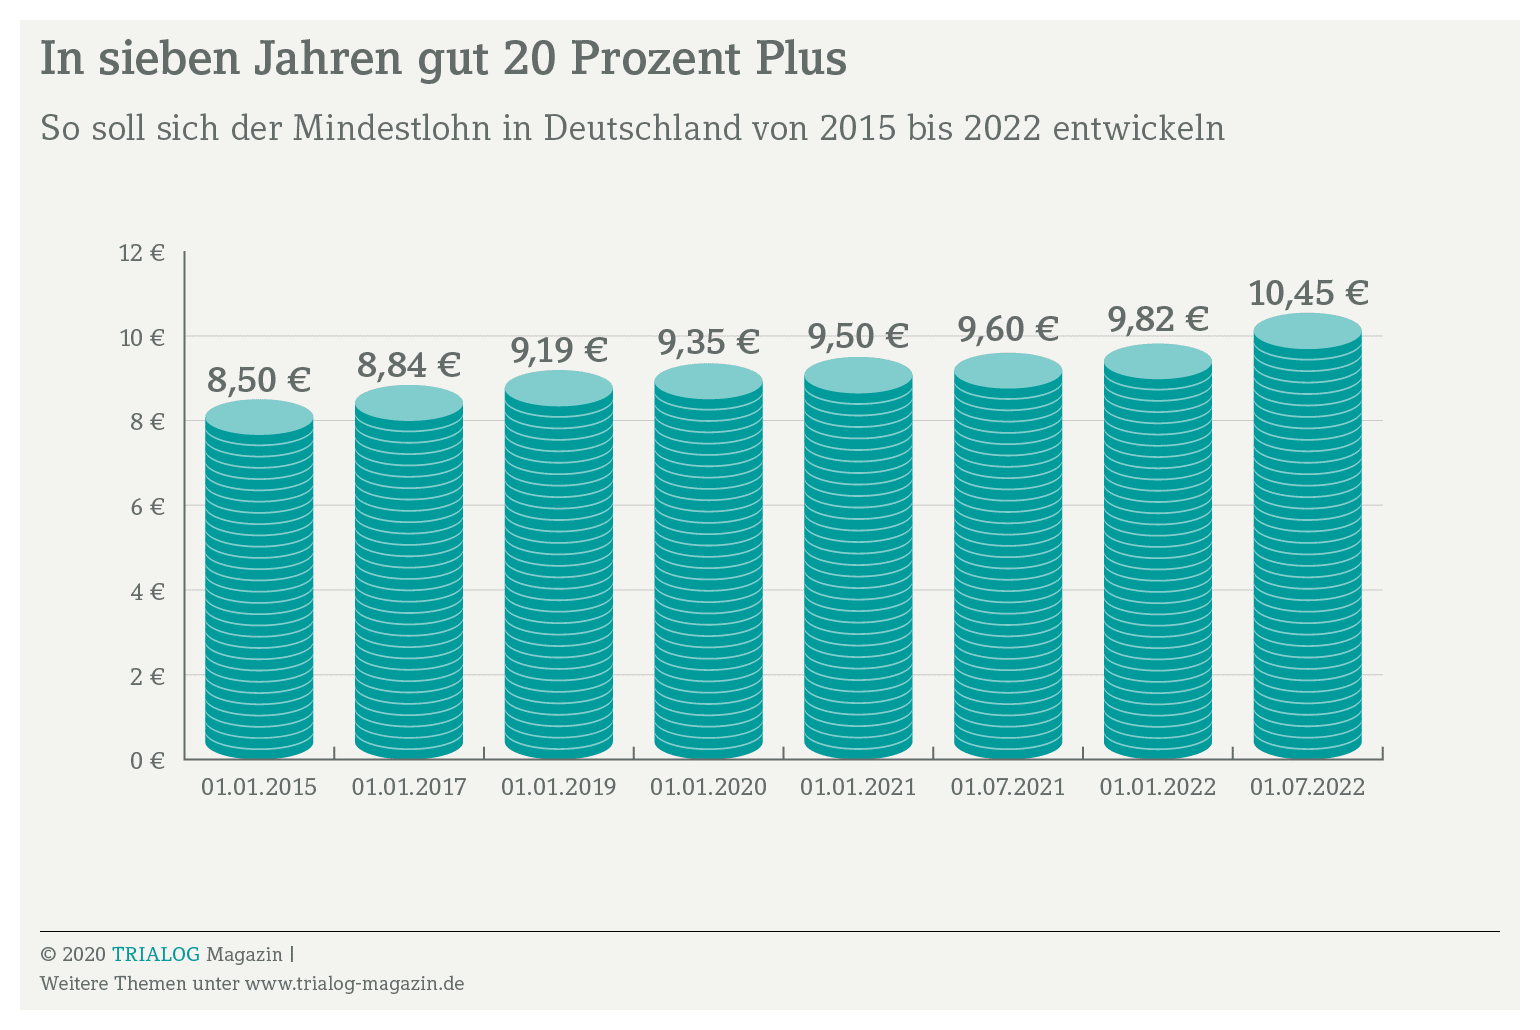 Innerhalb von sieben Jahren steigt der Mindestlohn in Deutschland um gut 20 Prozent von 8,50 Euro auf 10,45 Euro